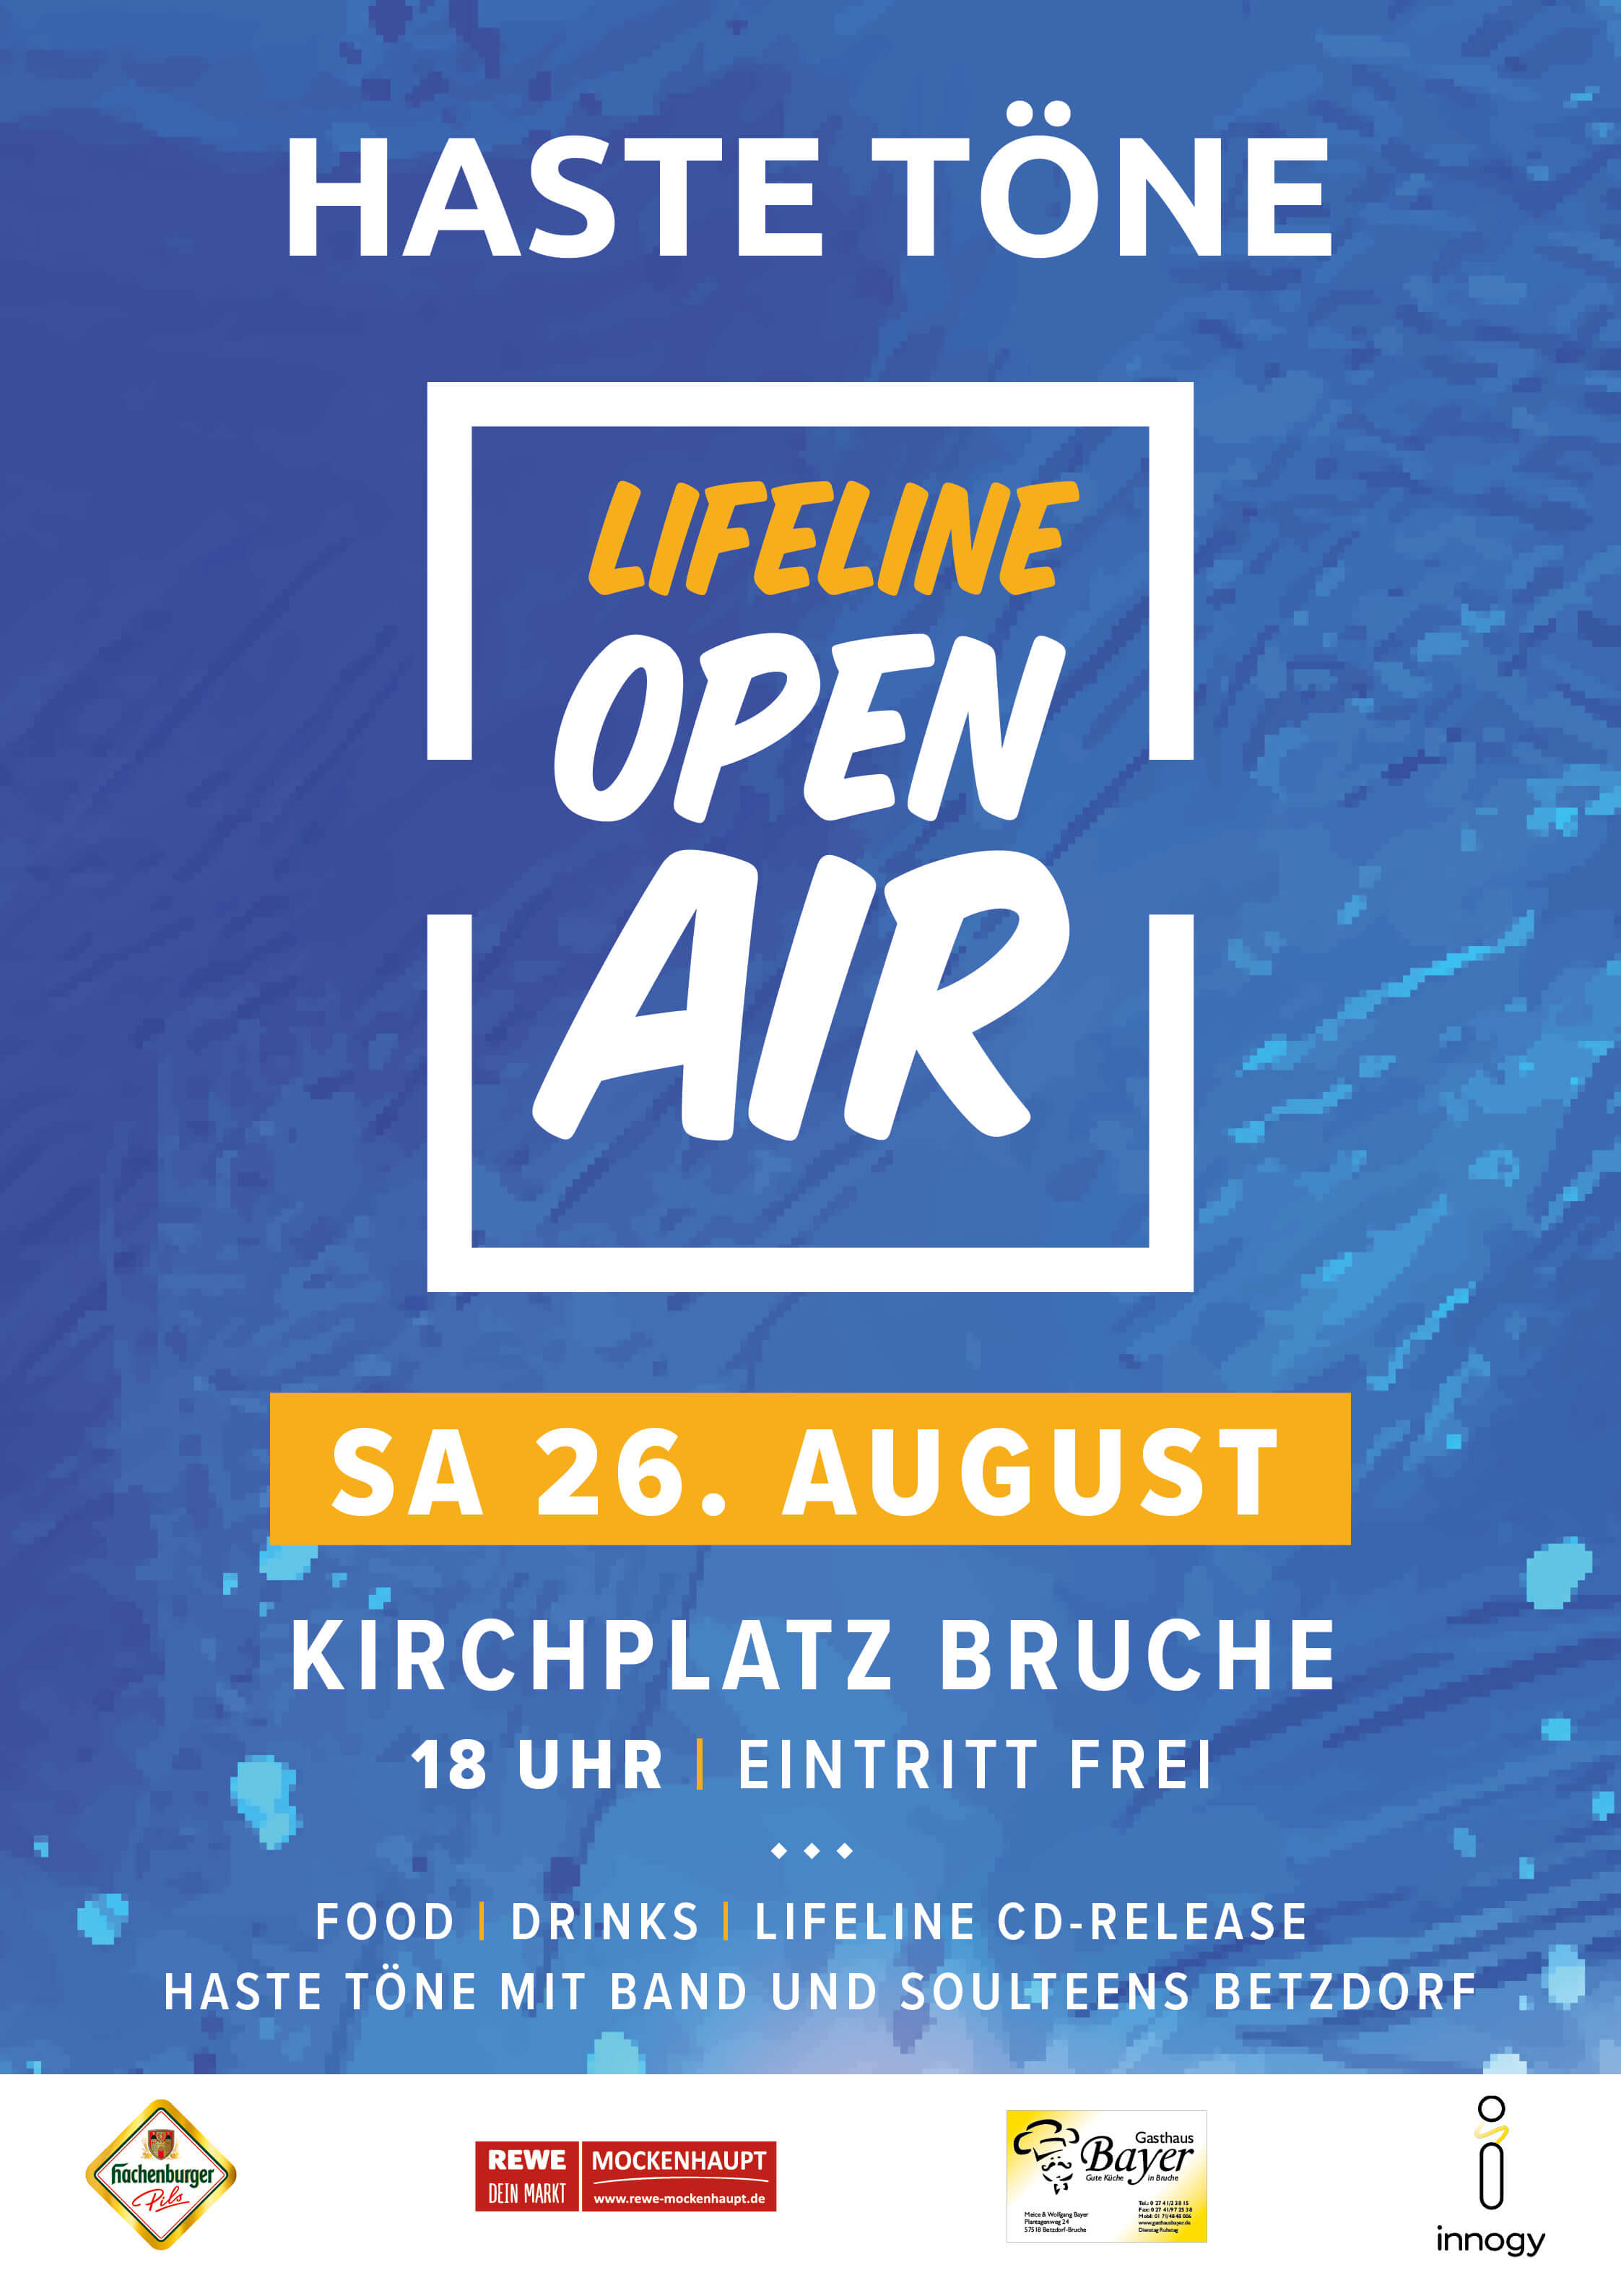 Plakat: LIFELINE Open Air Haste Töne am 26. August 2017 rund um den Kirchplatz in Brauche. Food, Cocktails, Bier und CD Release.